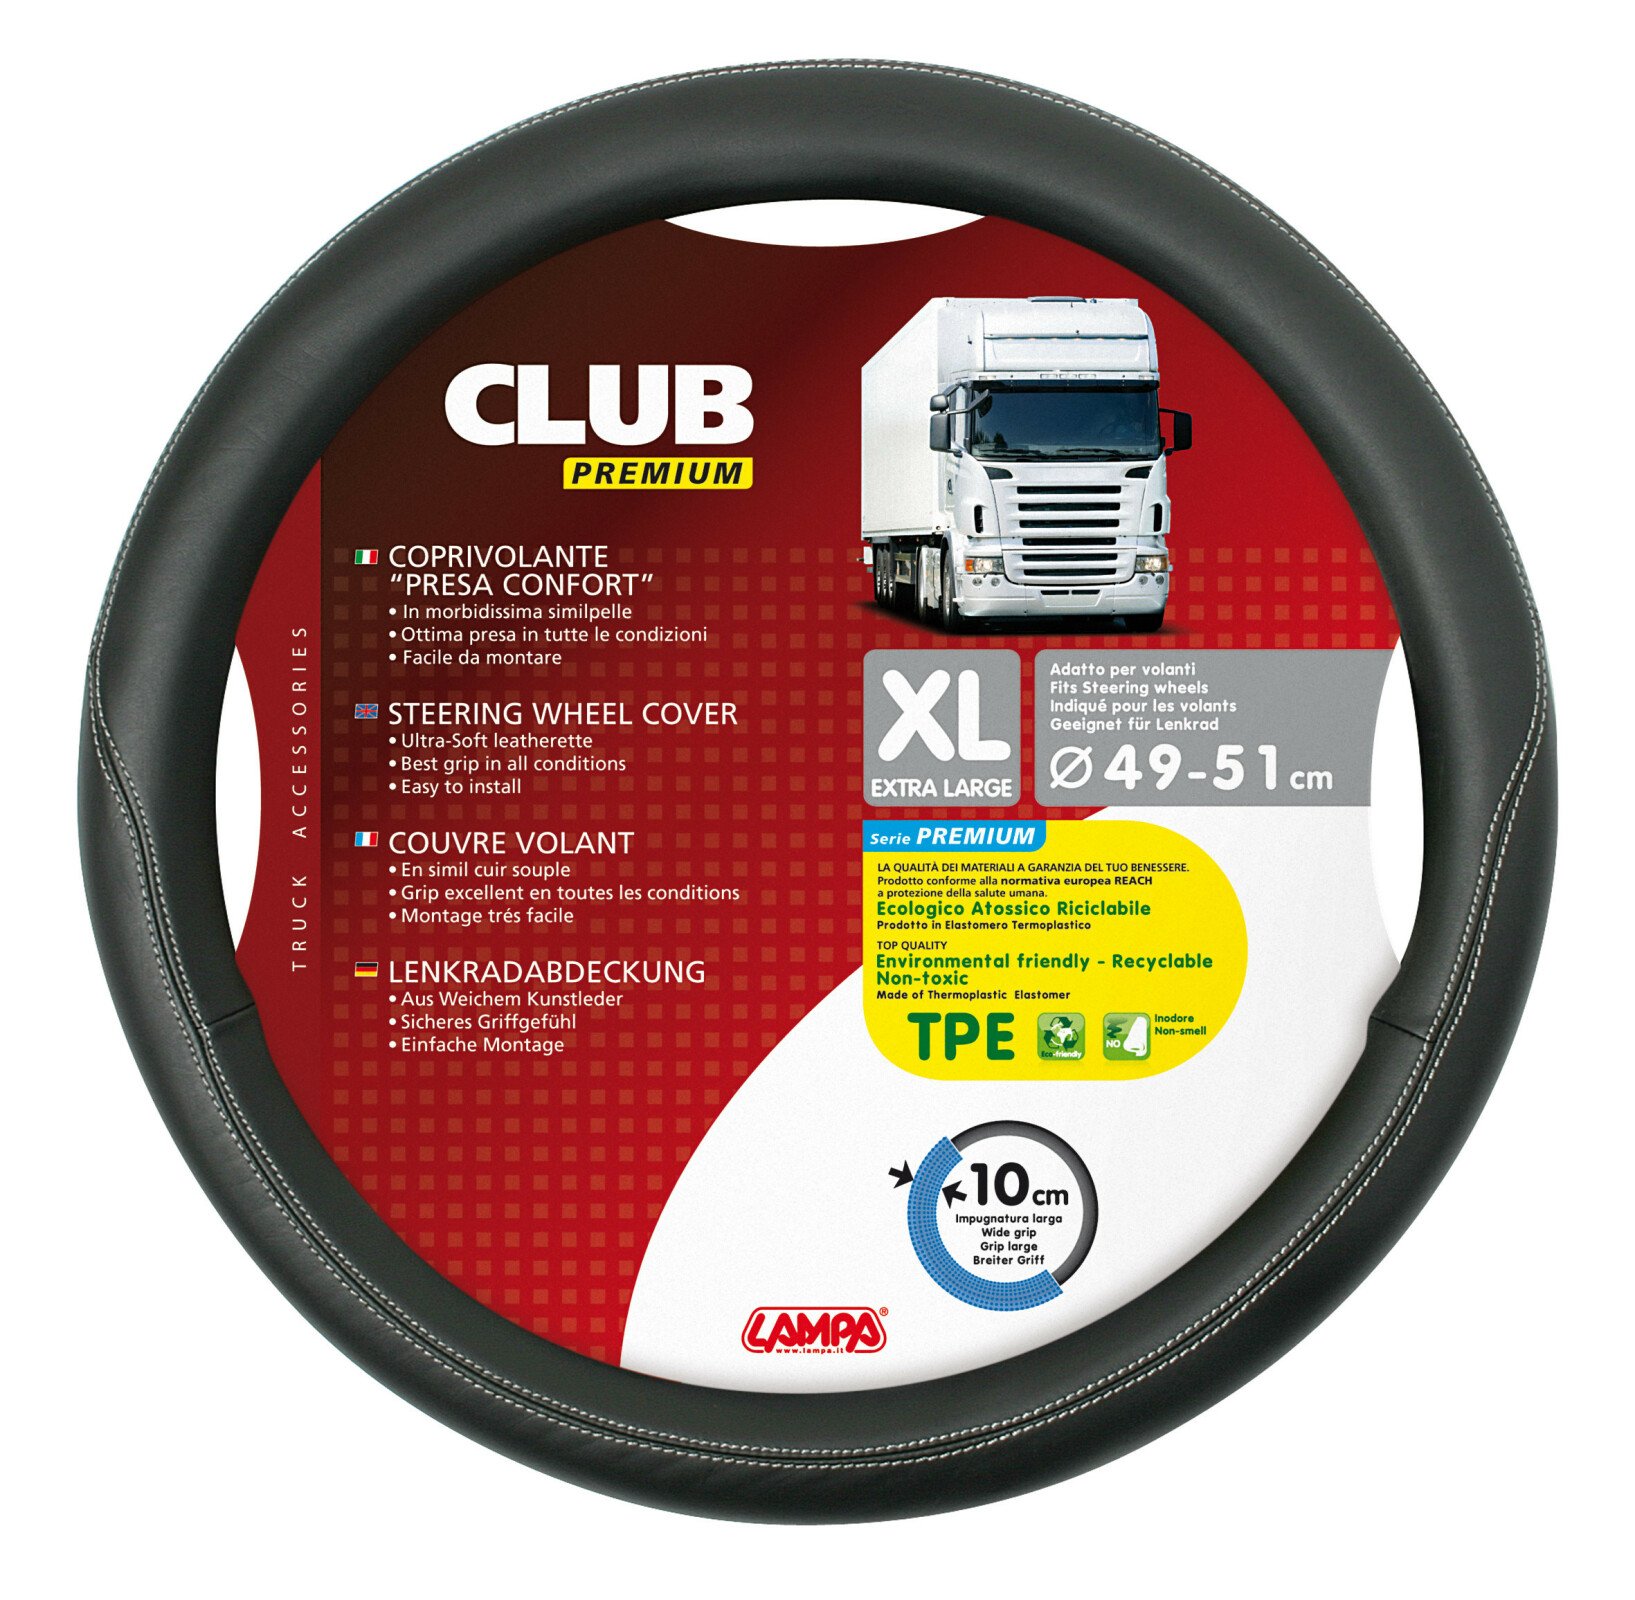 Club premium kamionos kormányhuzat  - XL - Ø 49/51 cm - Fekete thumb